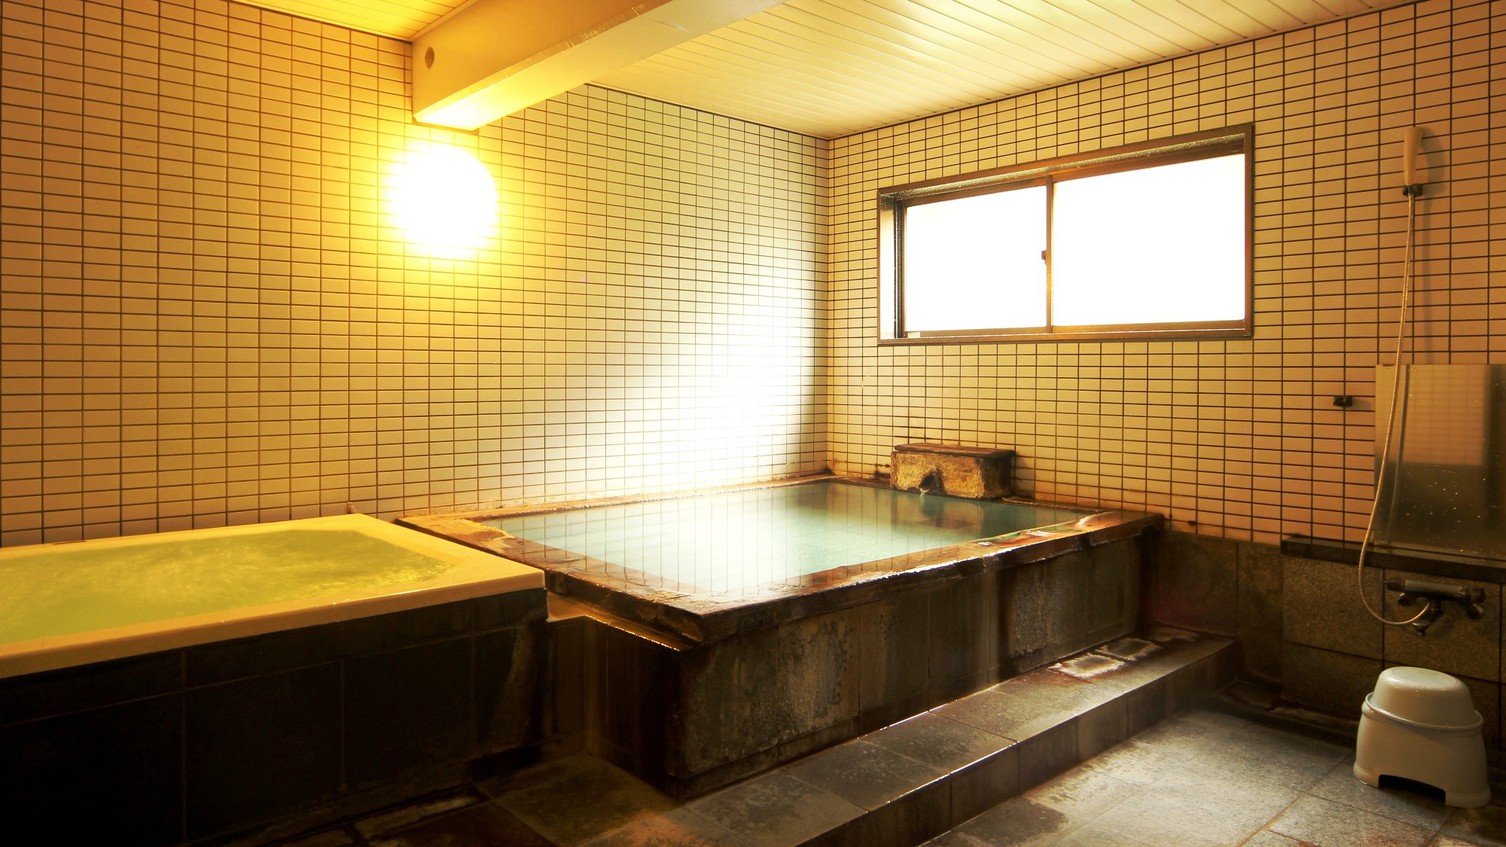 2つの浴槽で草津の湯をお楽しみいただけます。24時間入浴可能！